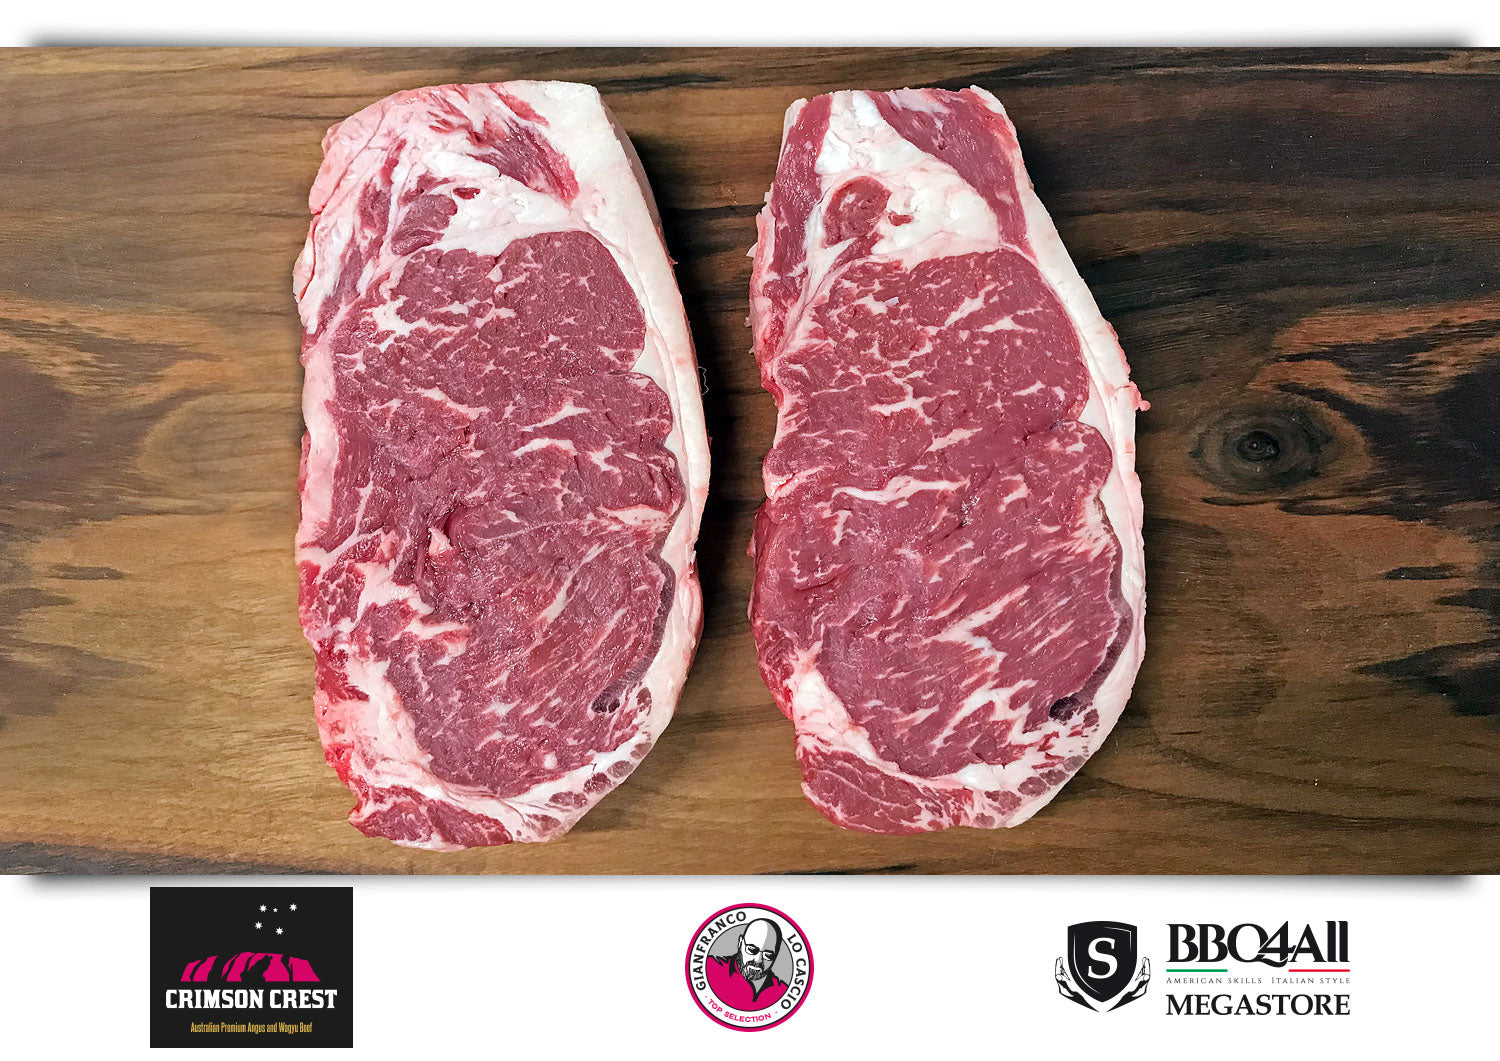 New York Strip Steak di Black Angus. La miglior carne online in Italia la trovi sul Megastore di BBQ4ALL